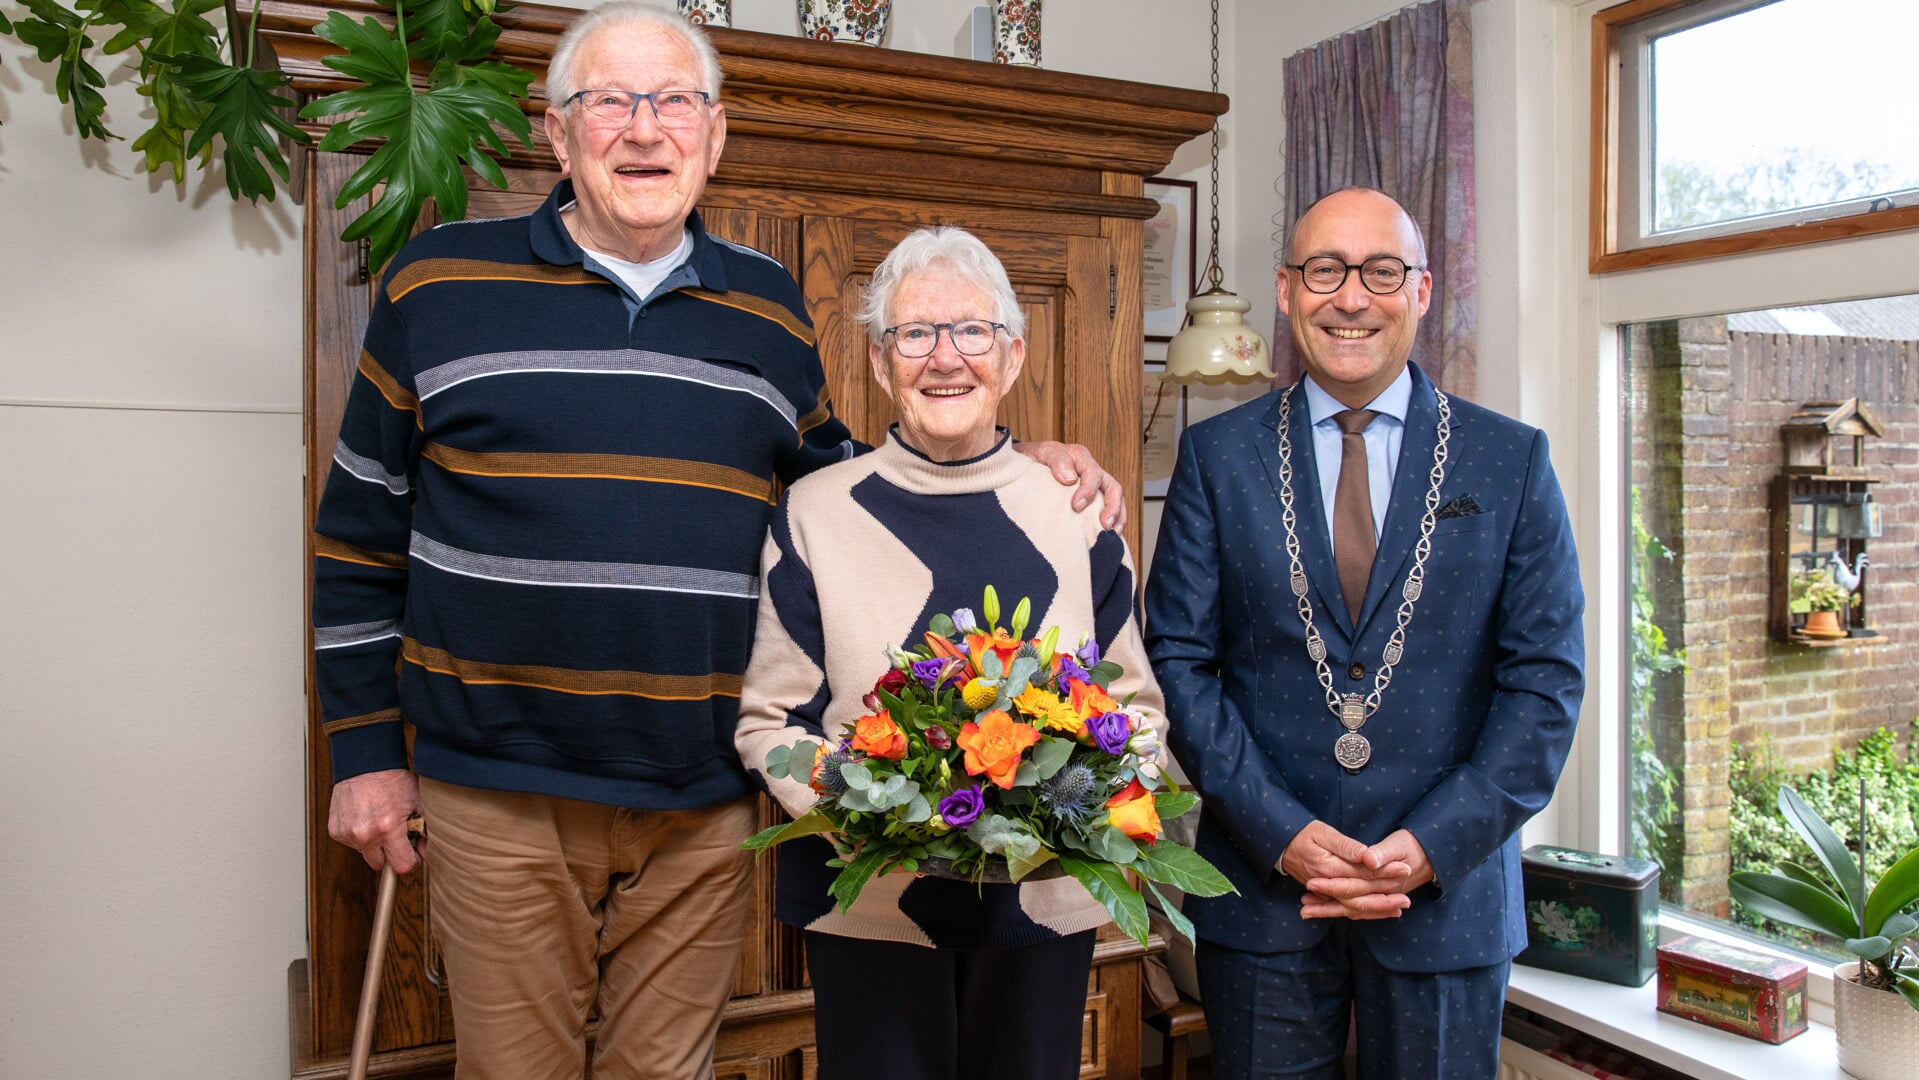 Burgemeester Hiemsta kwam het briljanten paar Lutjes een bloemetje en de felicitaties brengen.